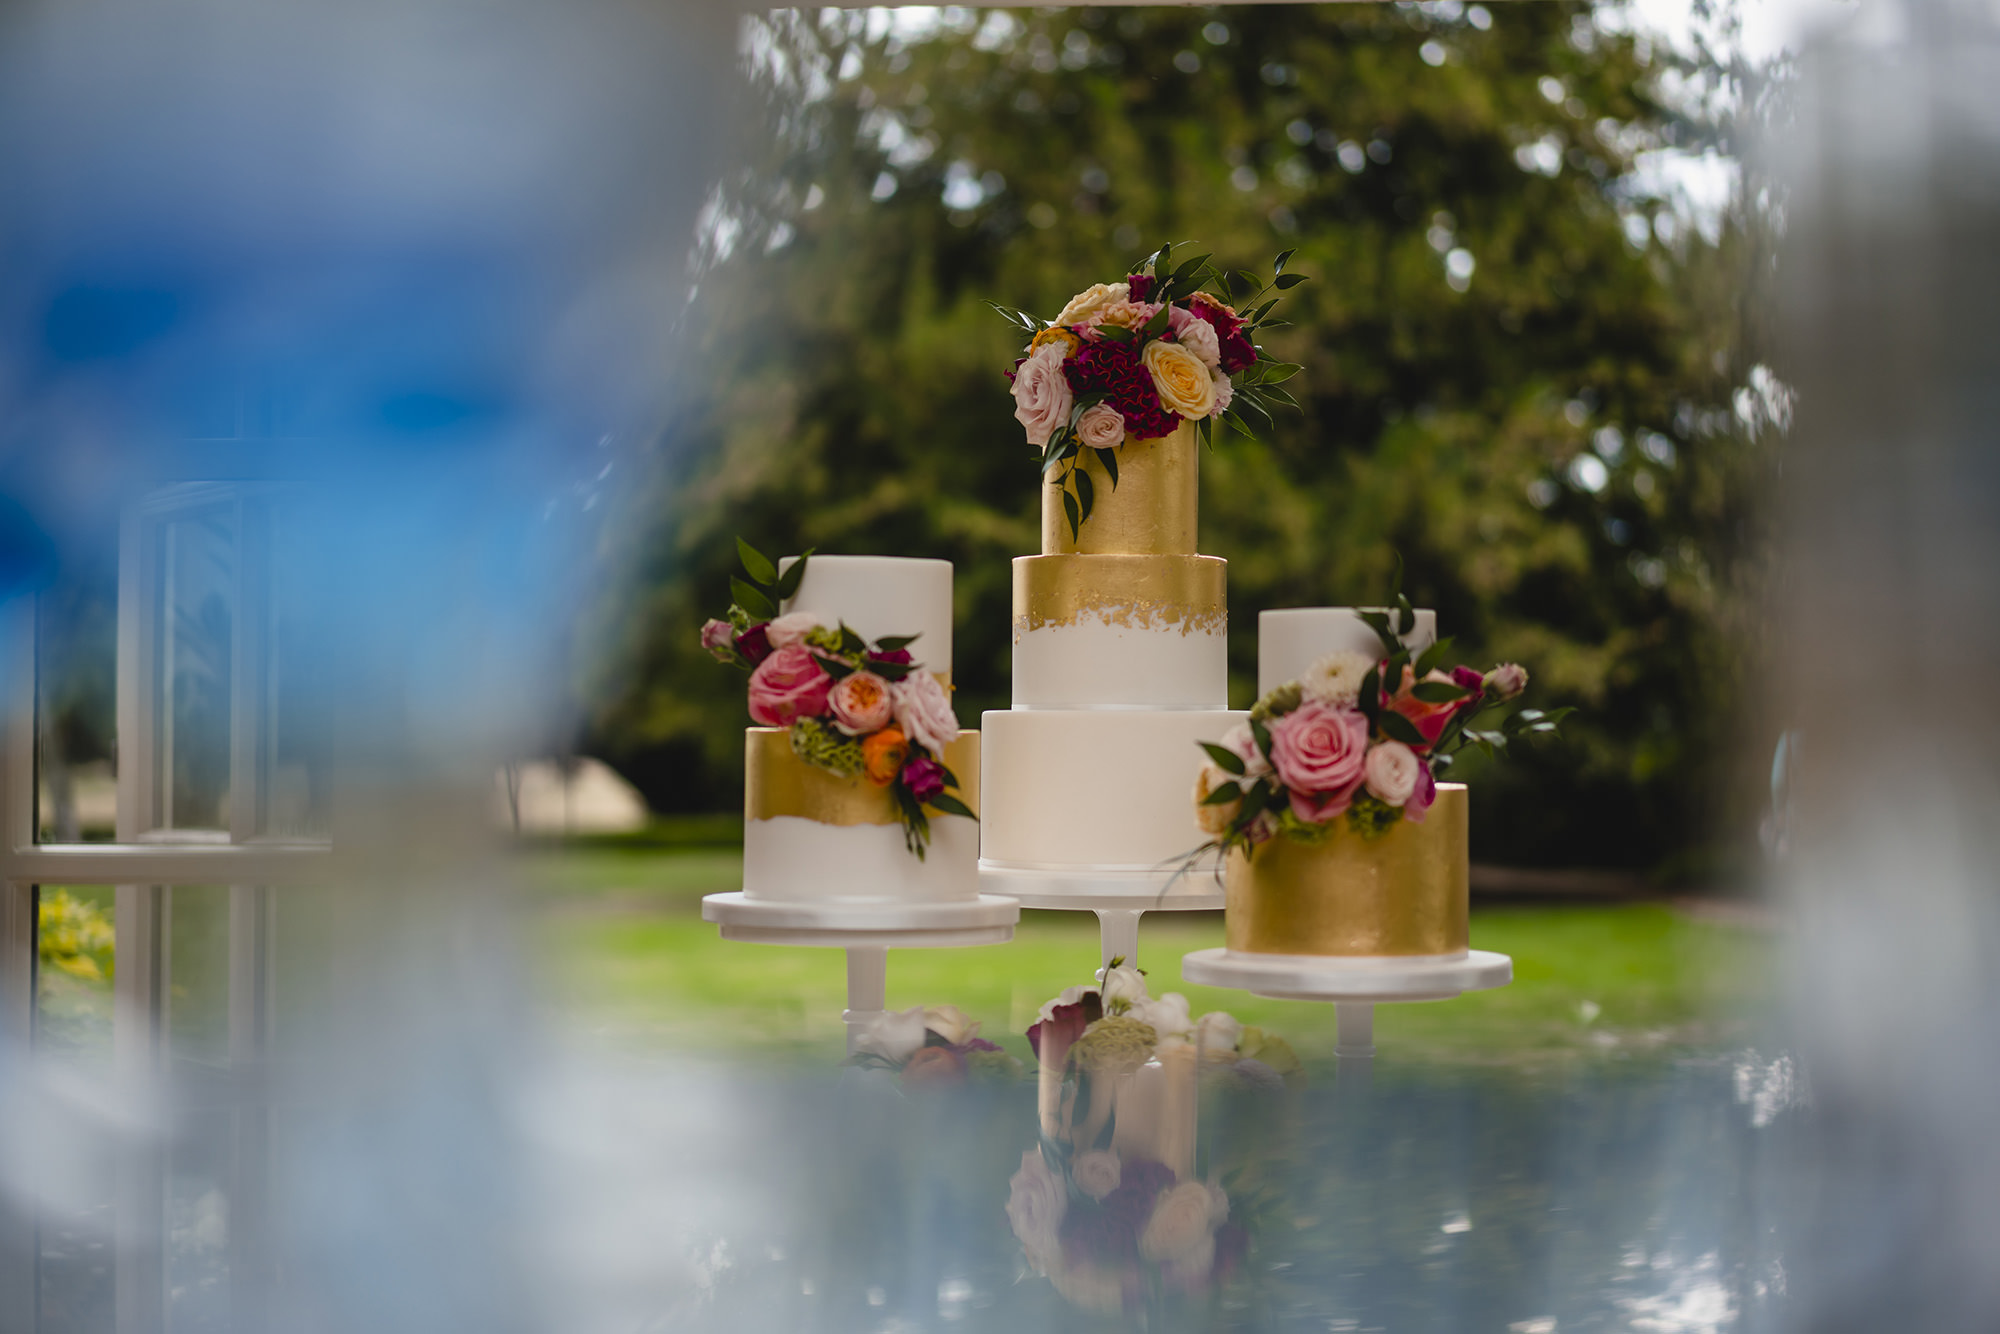 wedding cake details at stapleford park